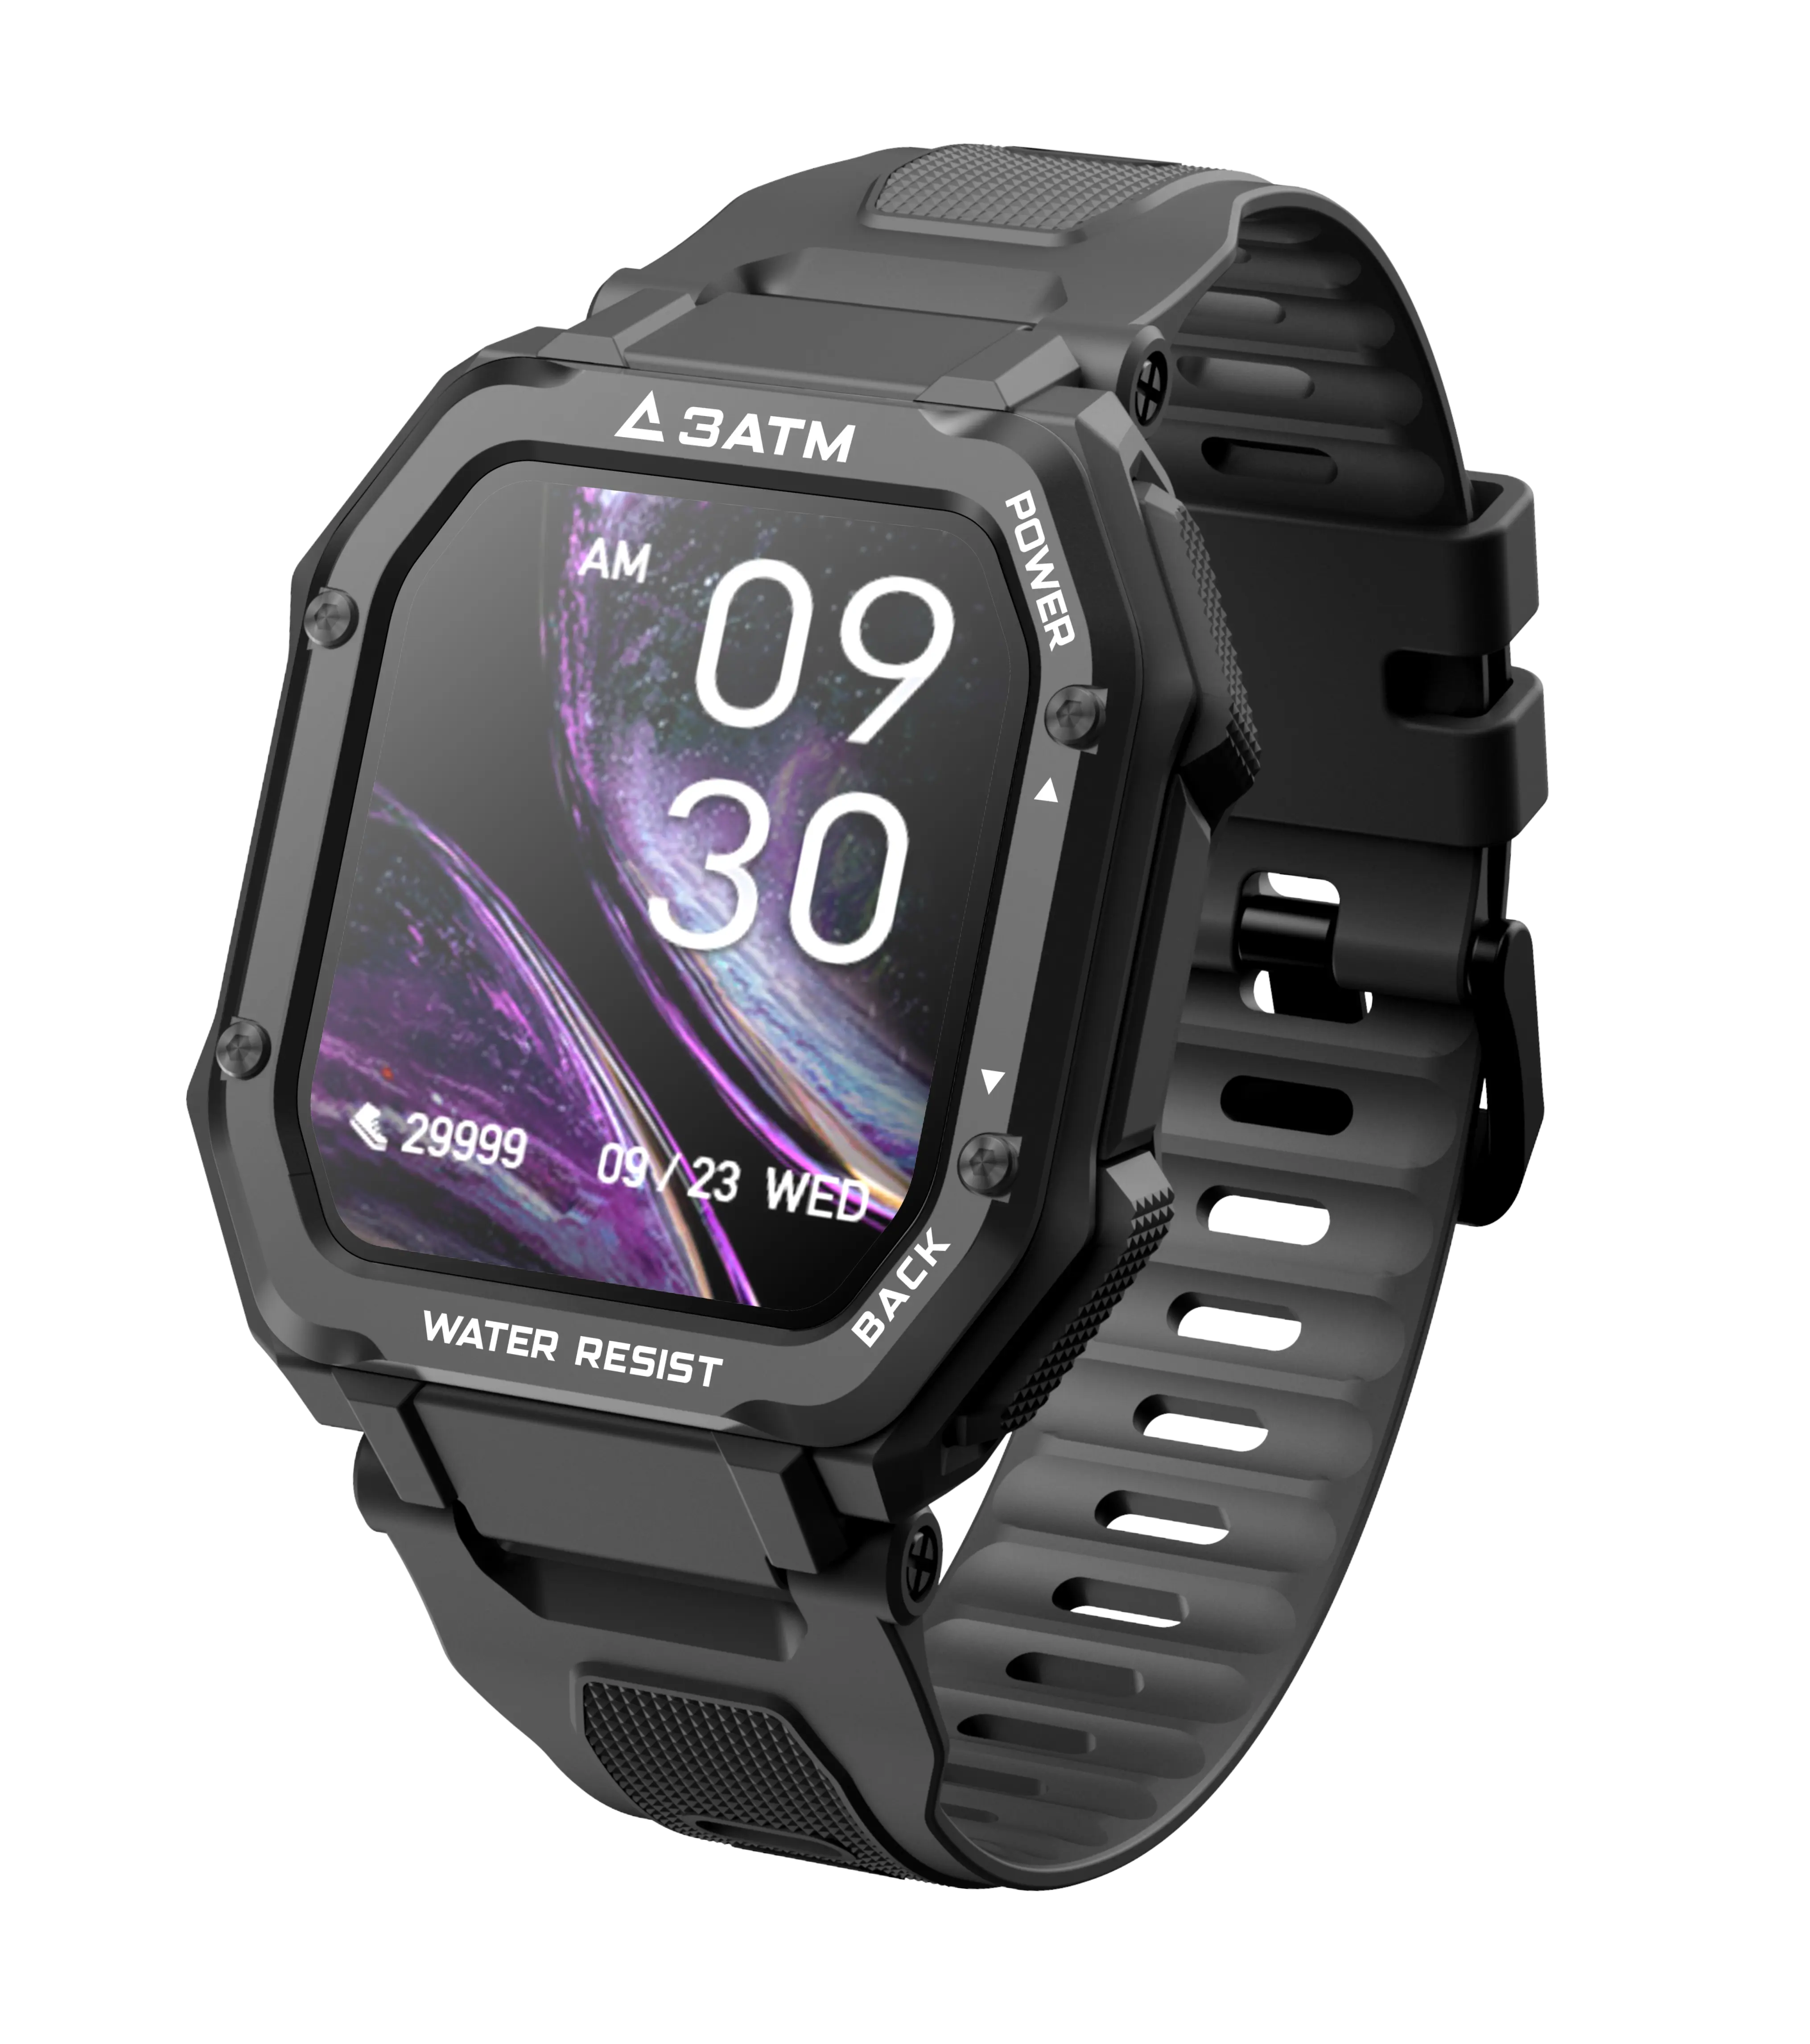 OEM/ODM C16 Smartwatch 1.69 inç HD büyük ekran 3ATM suya dayanıklı açık erkek spor akıllı saat C16